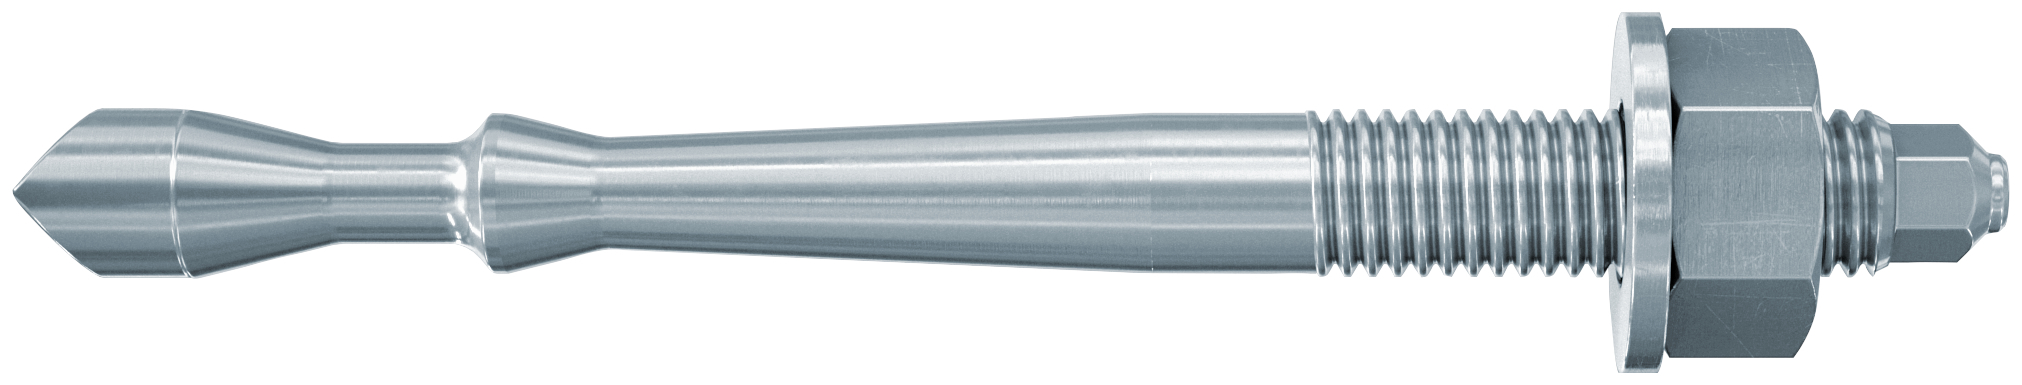 fischer Barra multicono in acciaio FHB II-A S M16x95-165 per ancorante chimico FIS HB (1 Pz.) Barra multicono corta in acciaio zincato classe 8.8. Massime prestazioni a trazione in calcestruzzo fessurato e a ridotte distanze dai bordi. fie1183